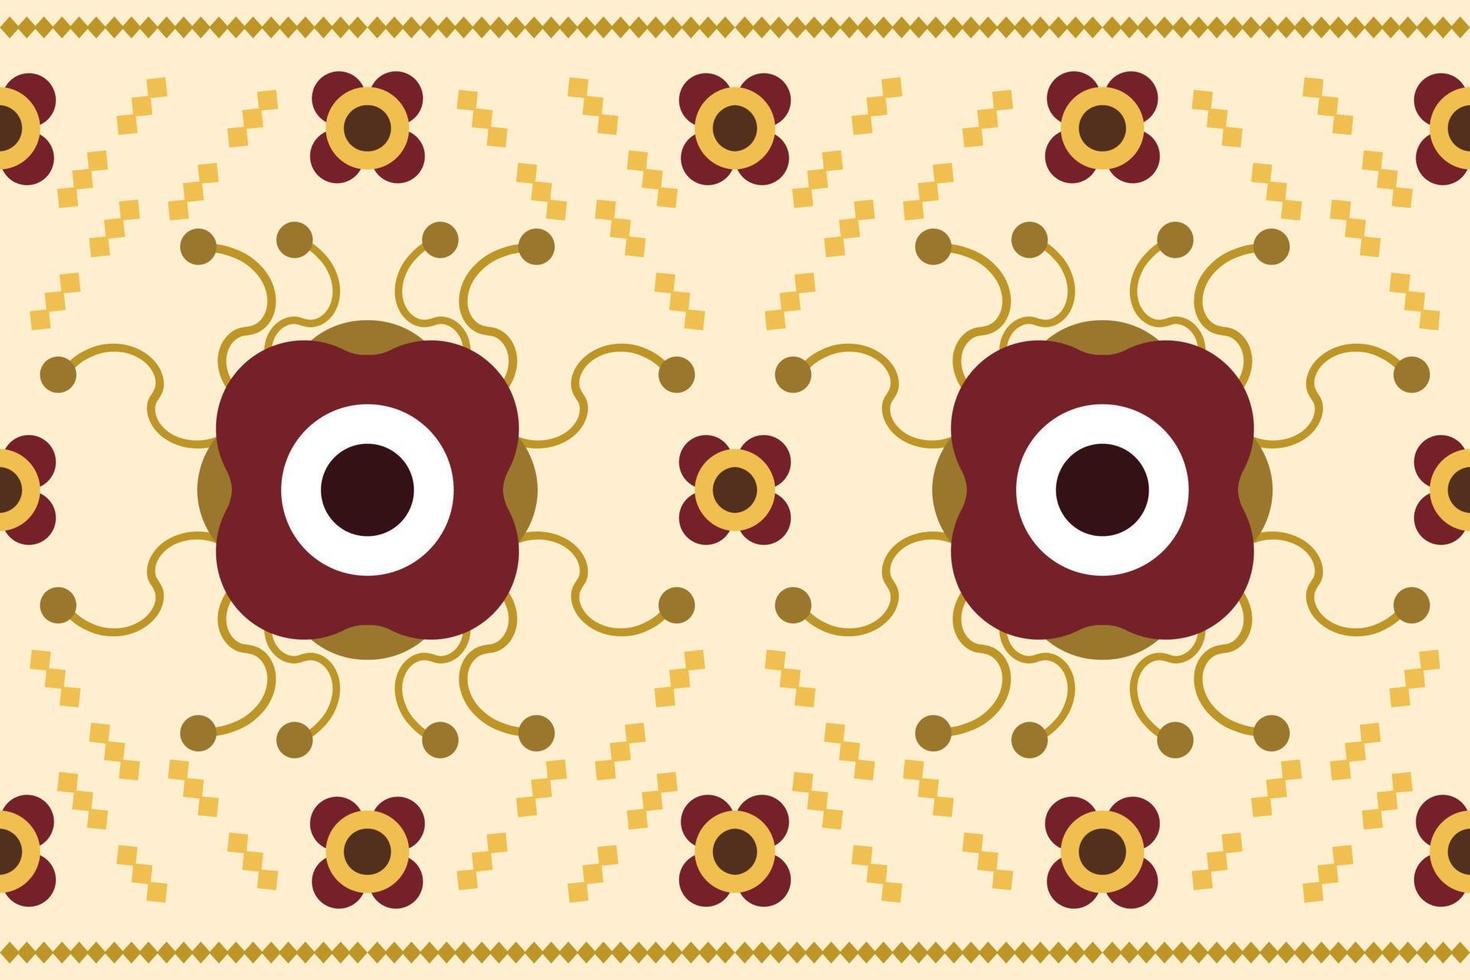 etnisch kleding stof patroon meetkundig stijl. sarong aztec etnisch oosters patroon traditioneel wit bruin room achtergrond. abstract,vector,illustratie. gebruik voor textuur,kleding,verpakking,decoratie,tapijt. vector